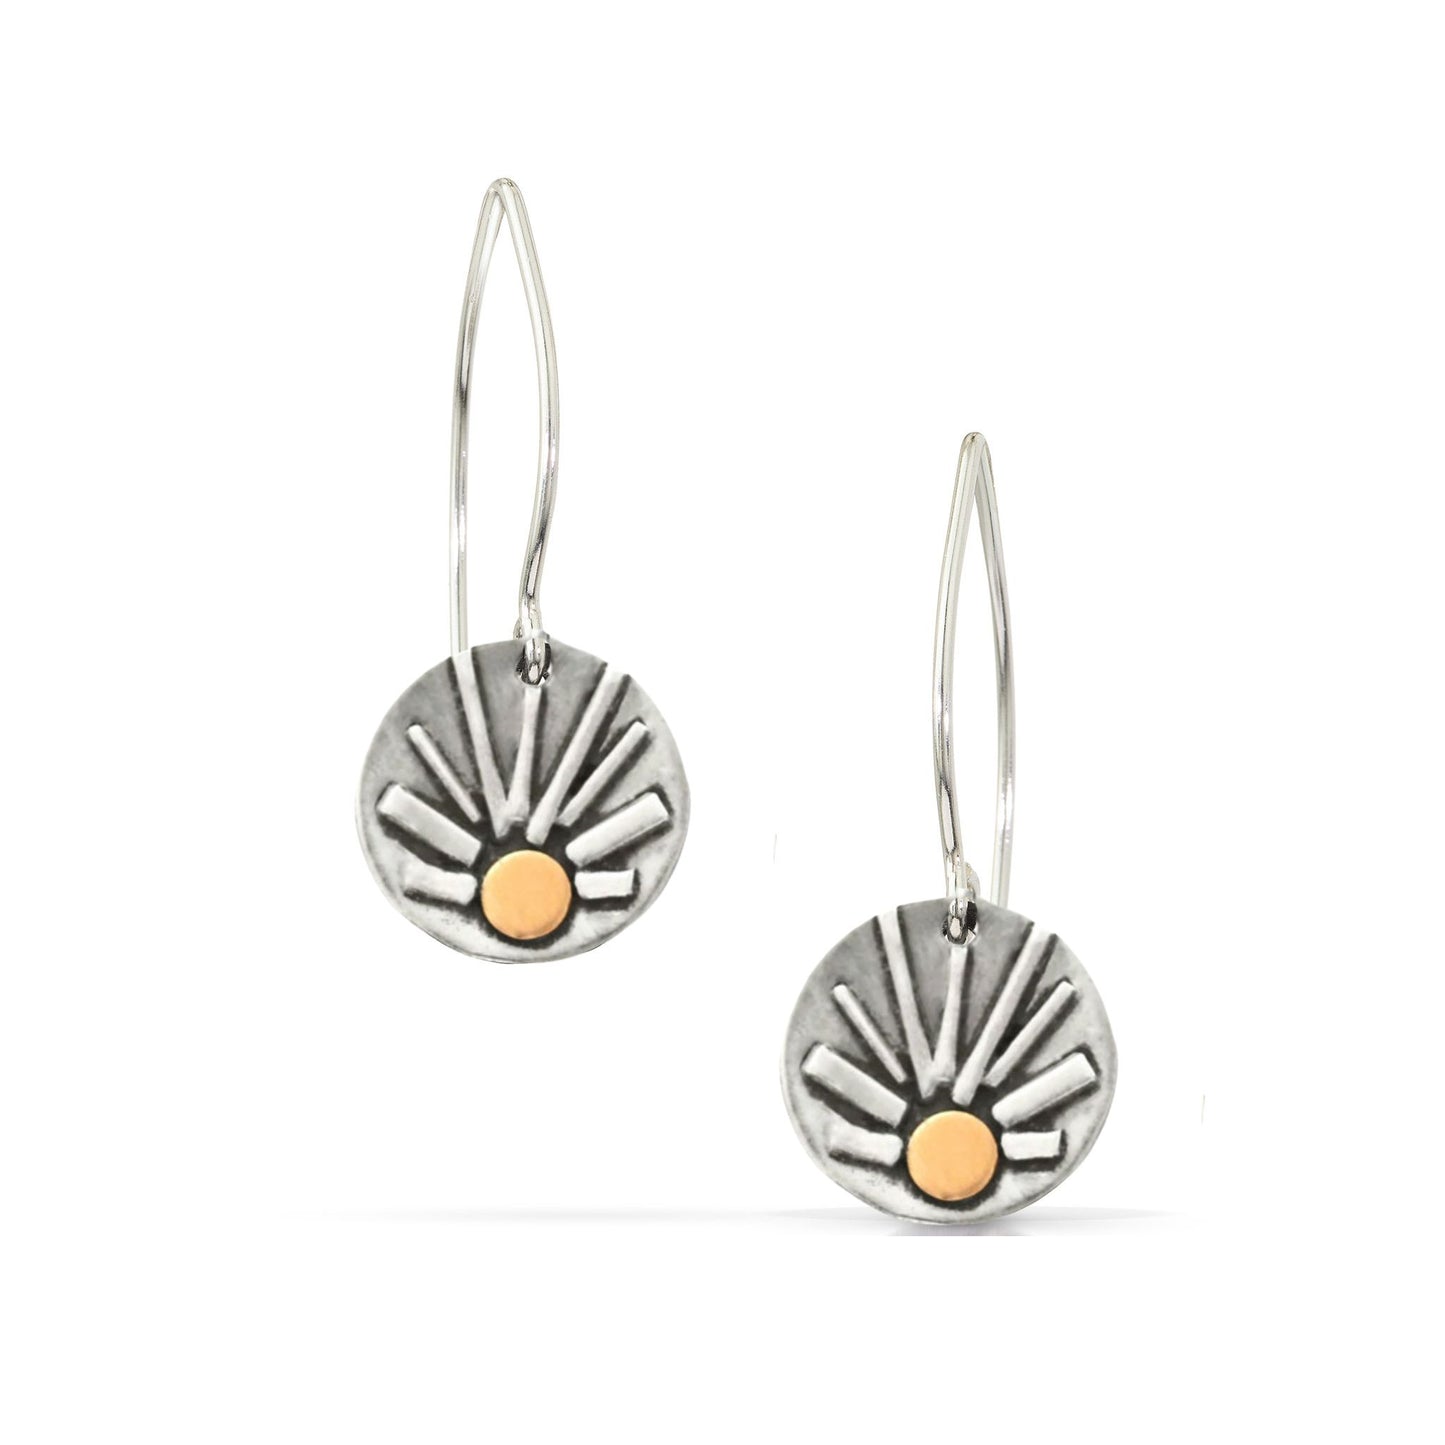 Sun dangle earrings by Jen Lesea Designs